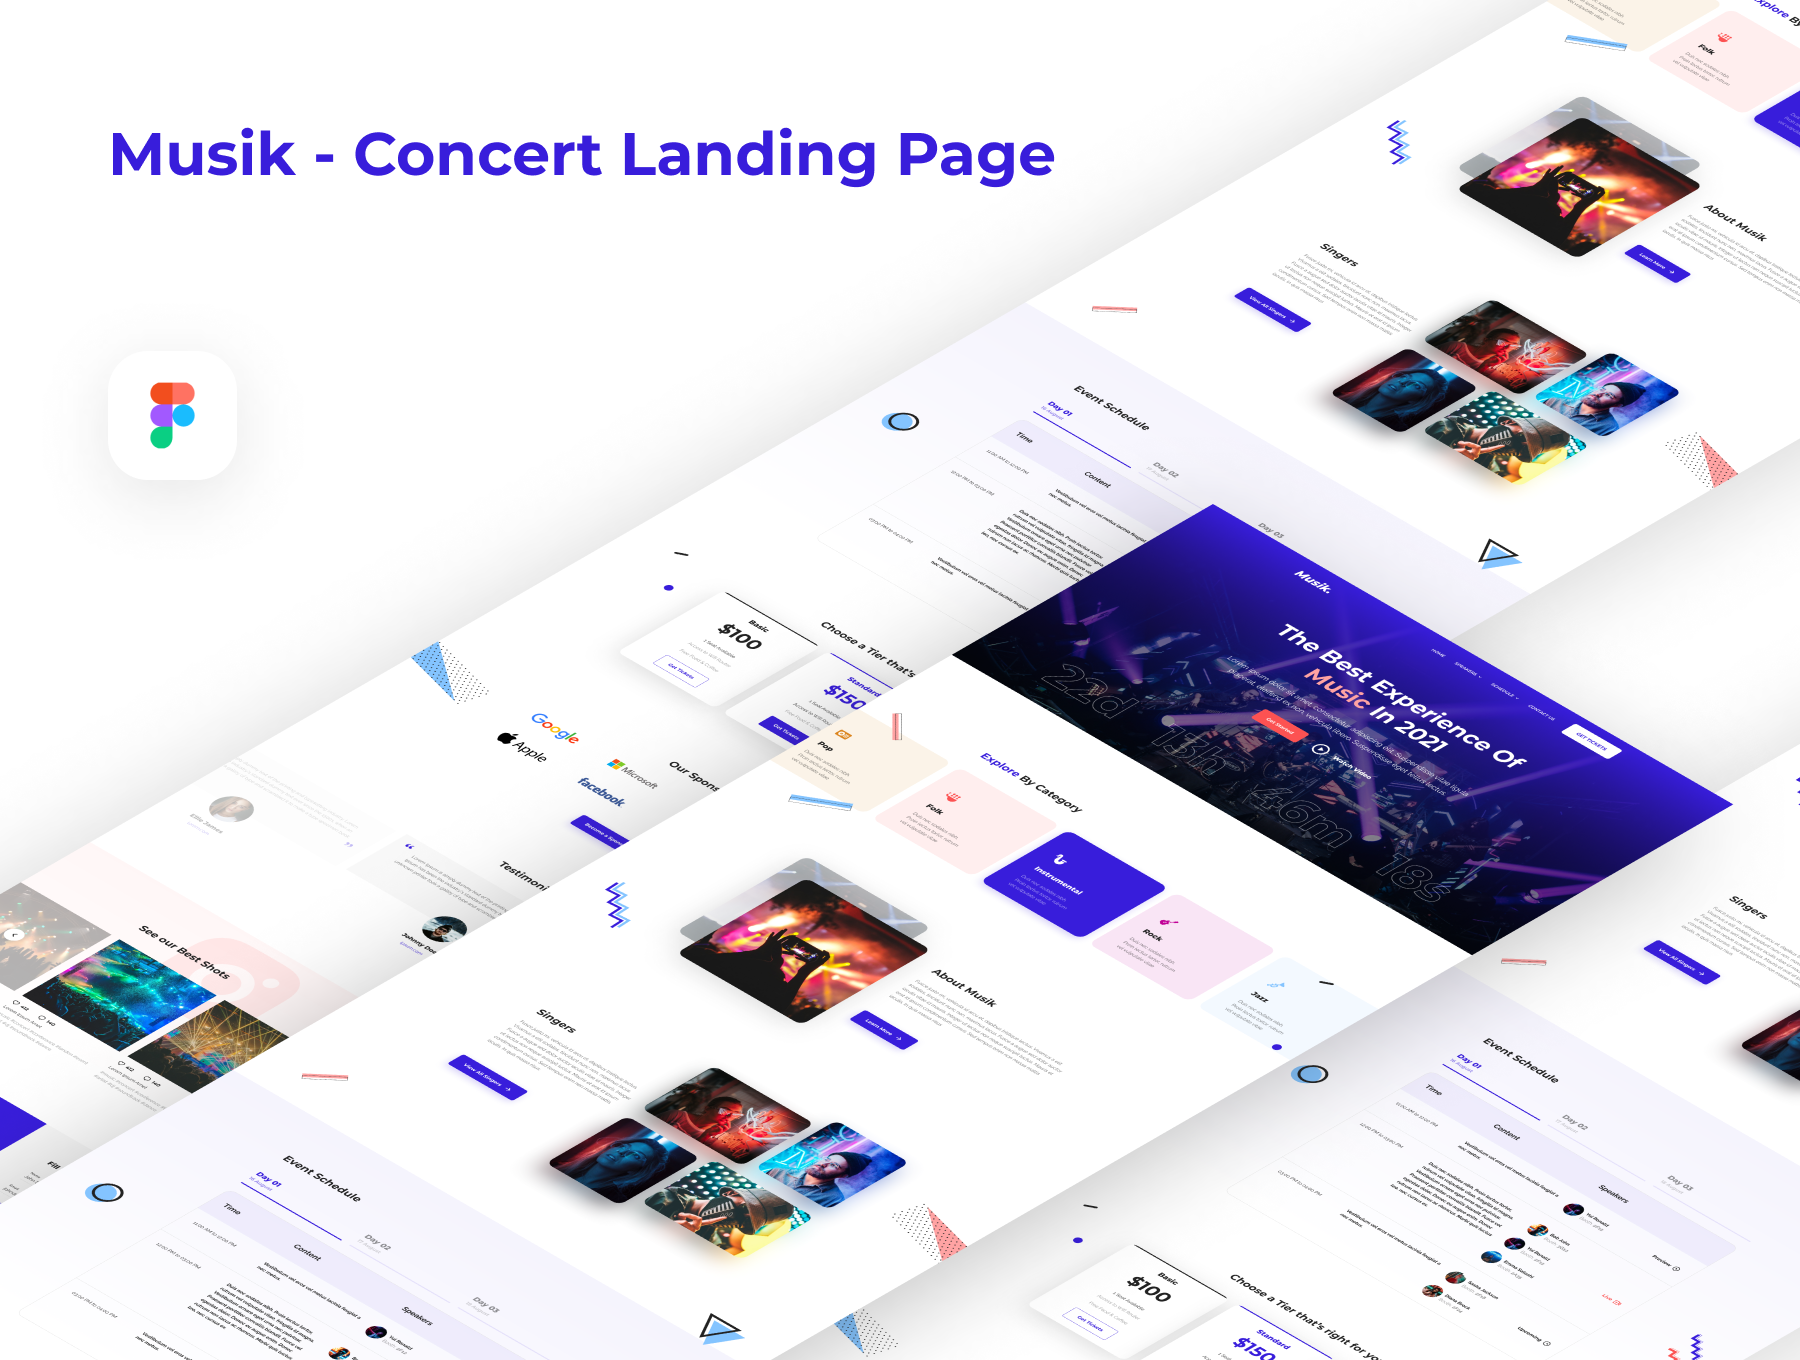 音乐演唱会网站登陆页设计UI套件 Musik - Concert Landing Page